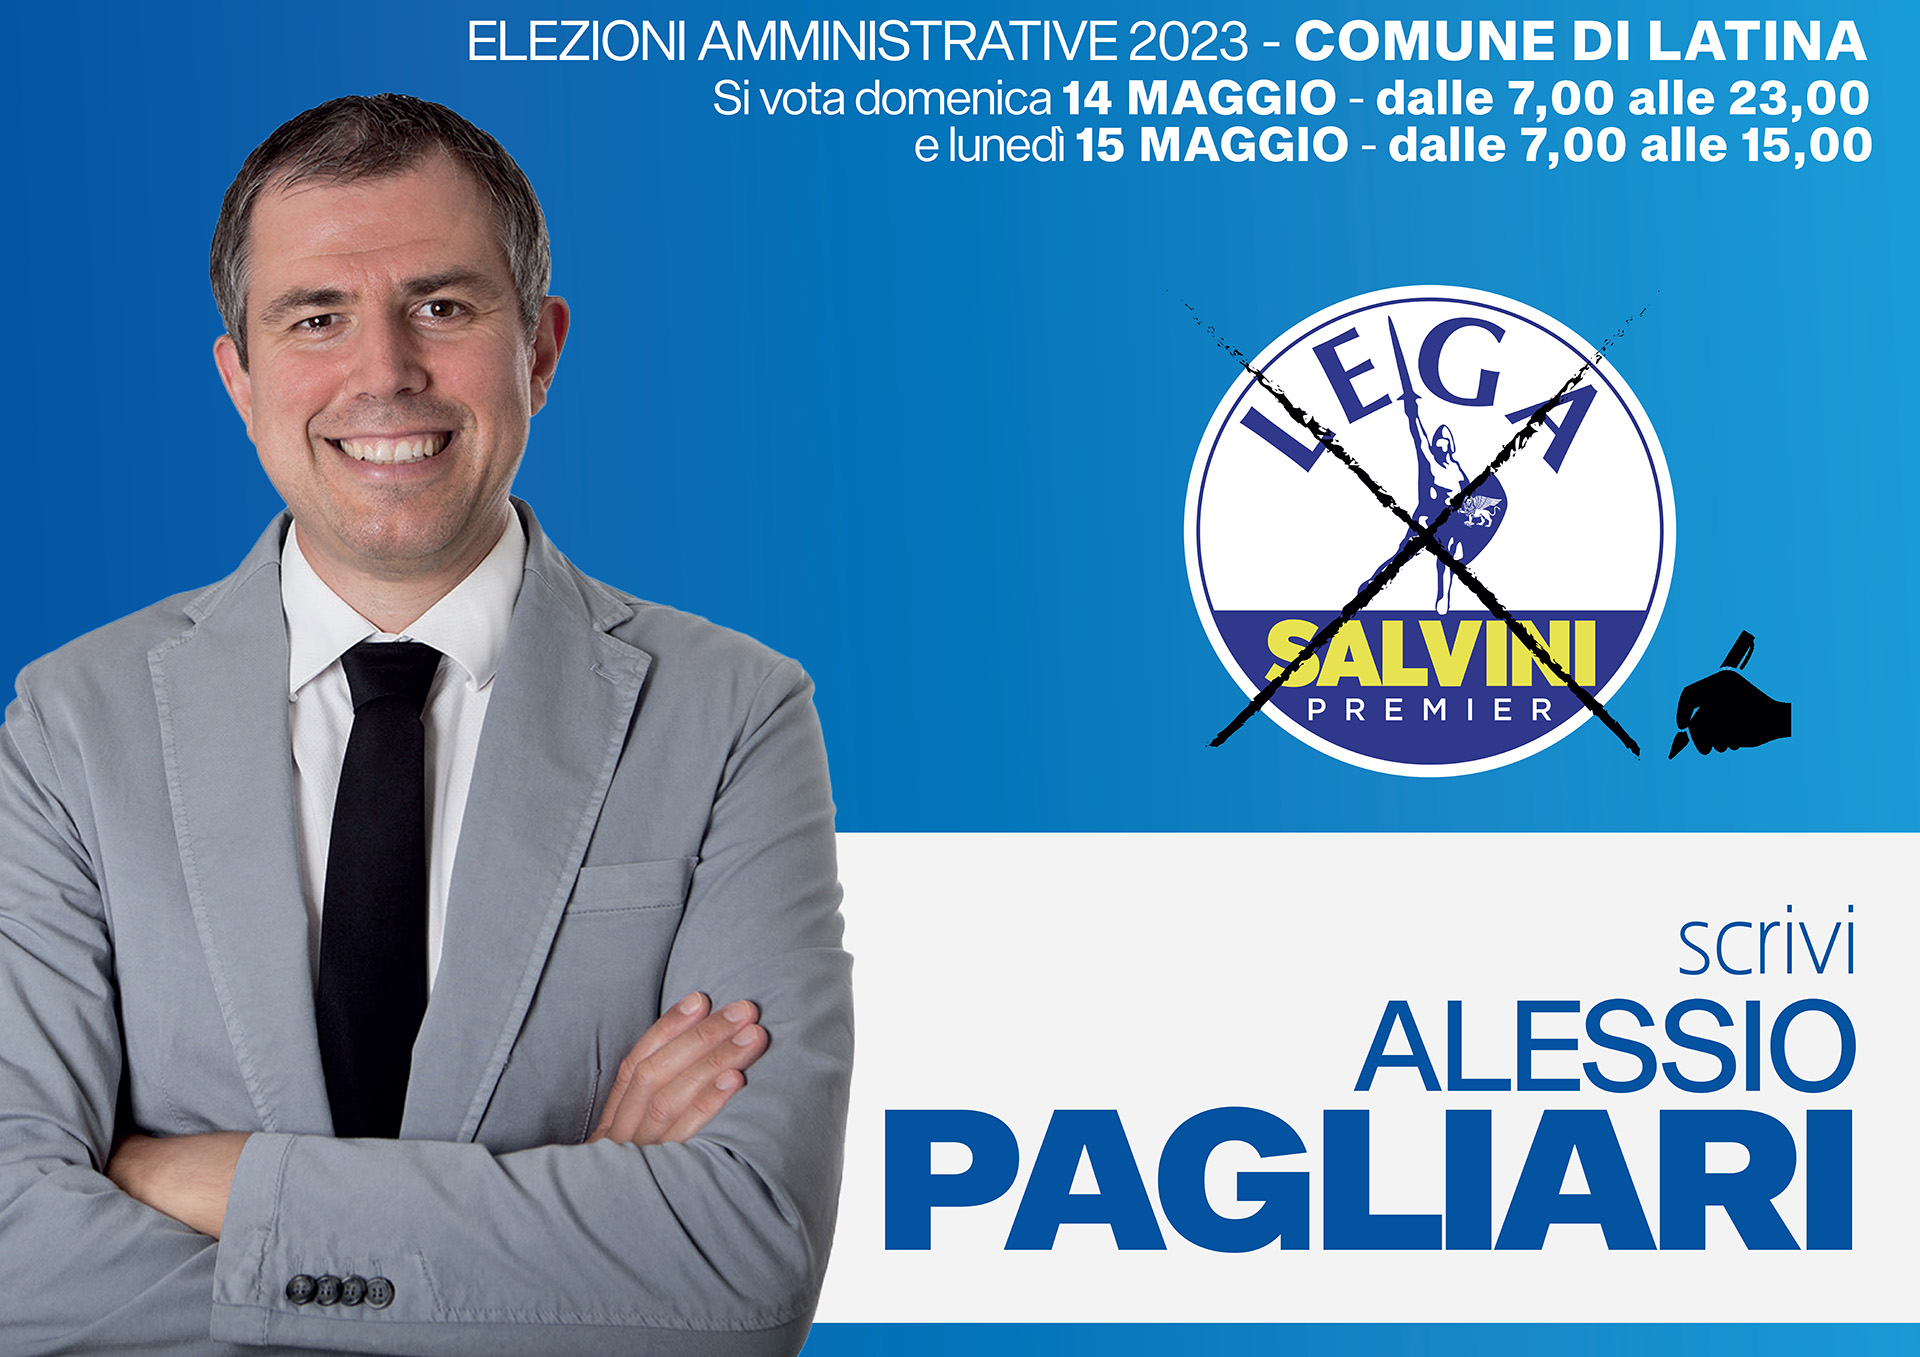 Alessio Pagliari - candidato consiglio comunale di Latina